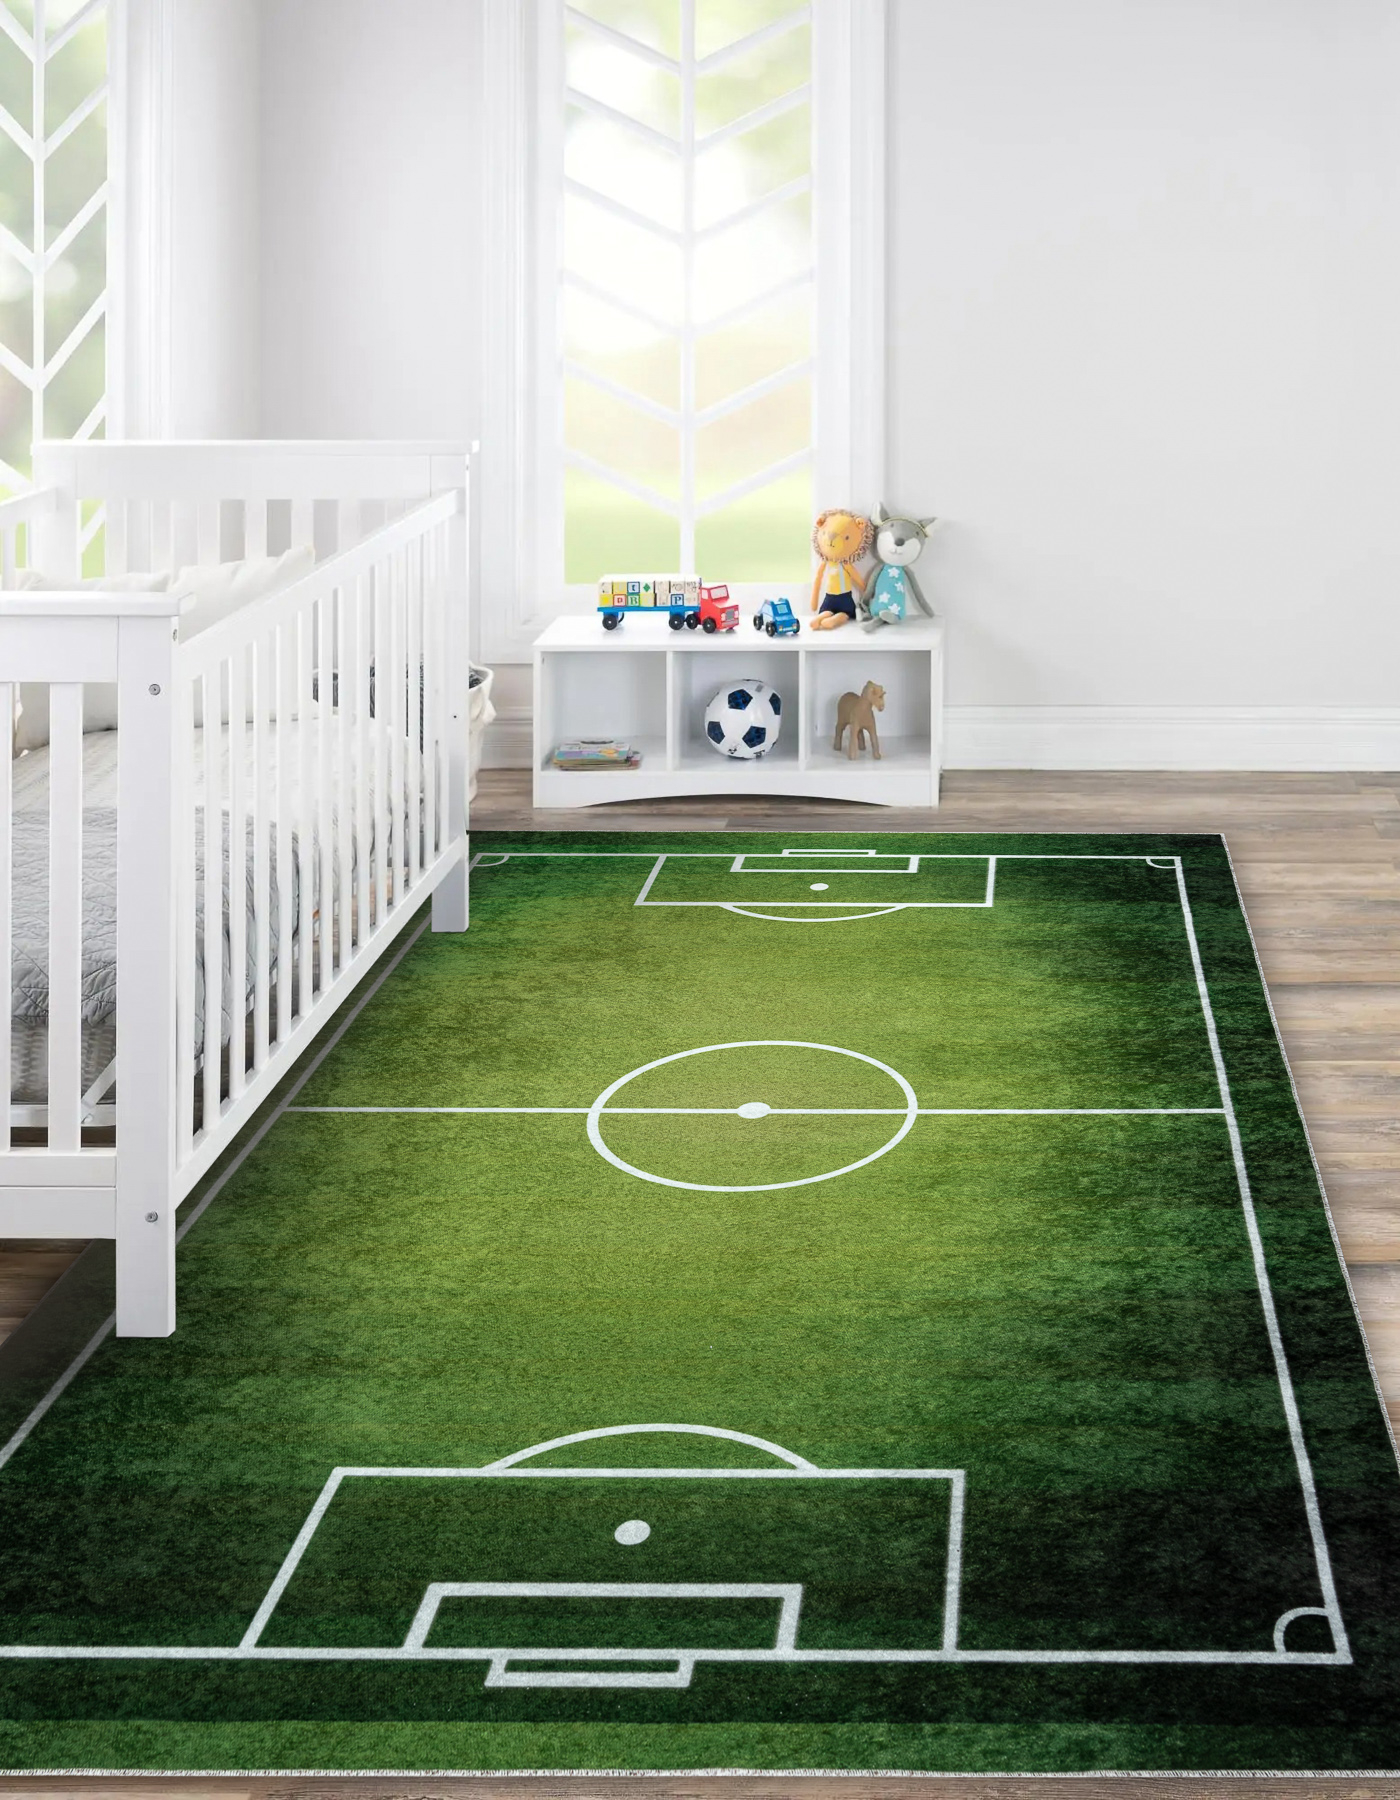 Alfombra infantil para habitación infantil forma de fútbol alfombra de pelo  alto verde-blanco